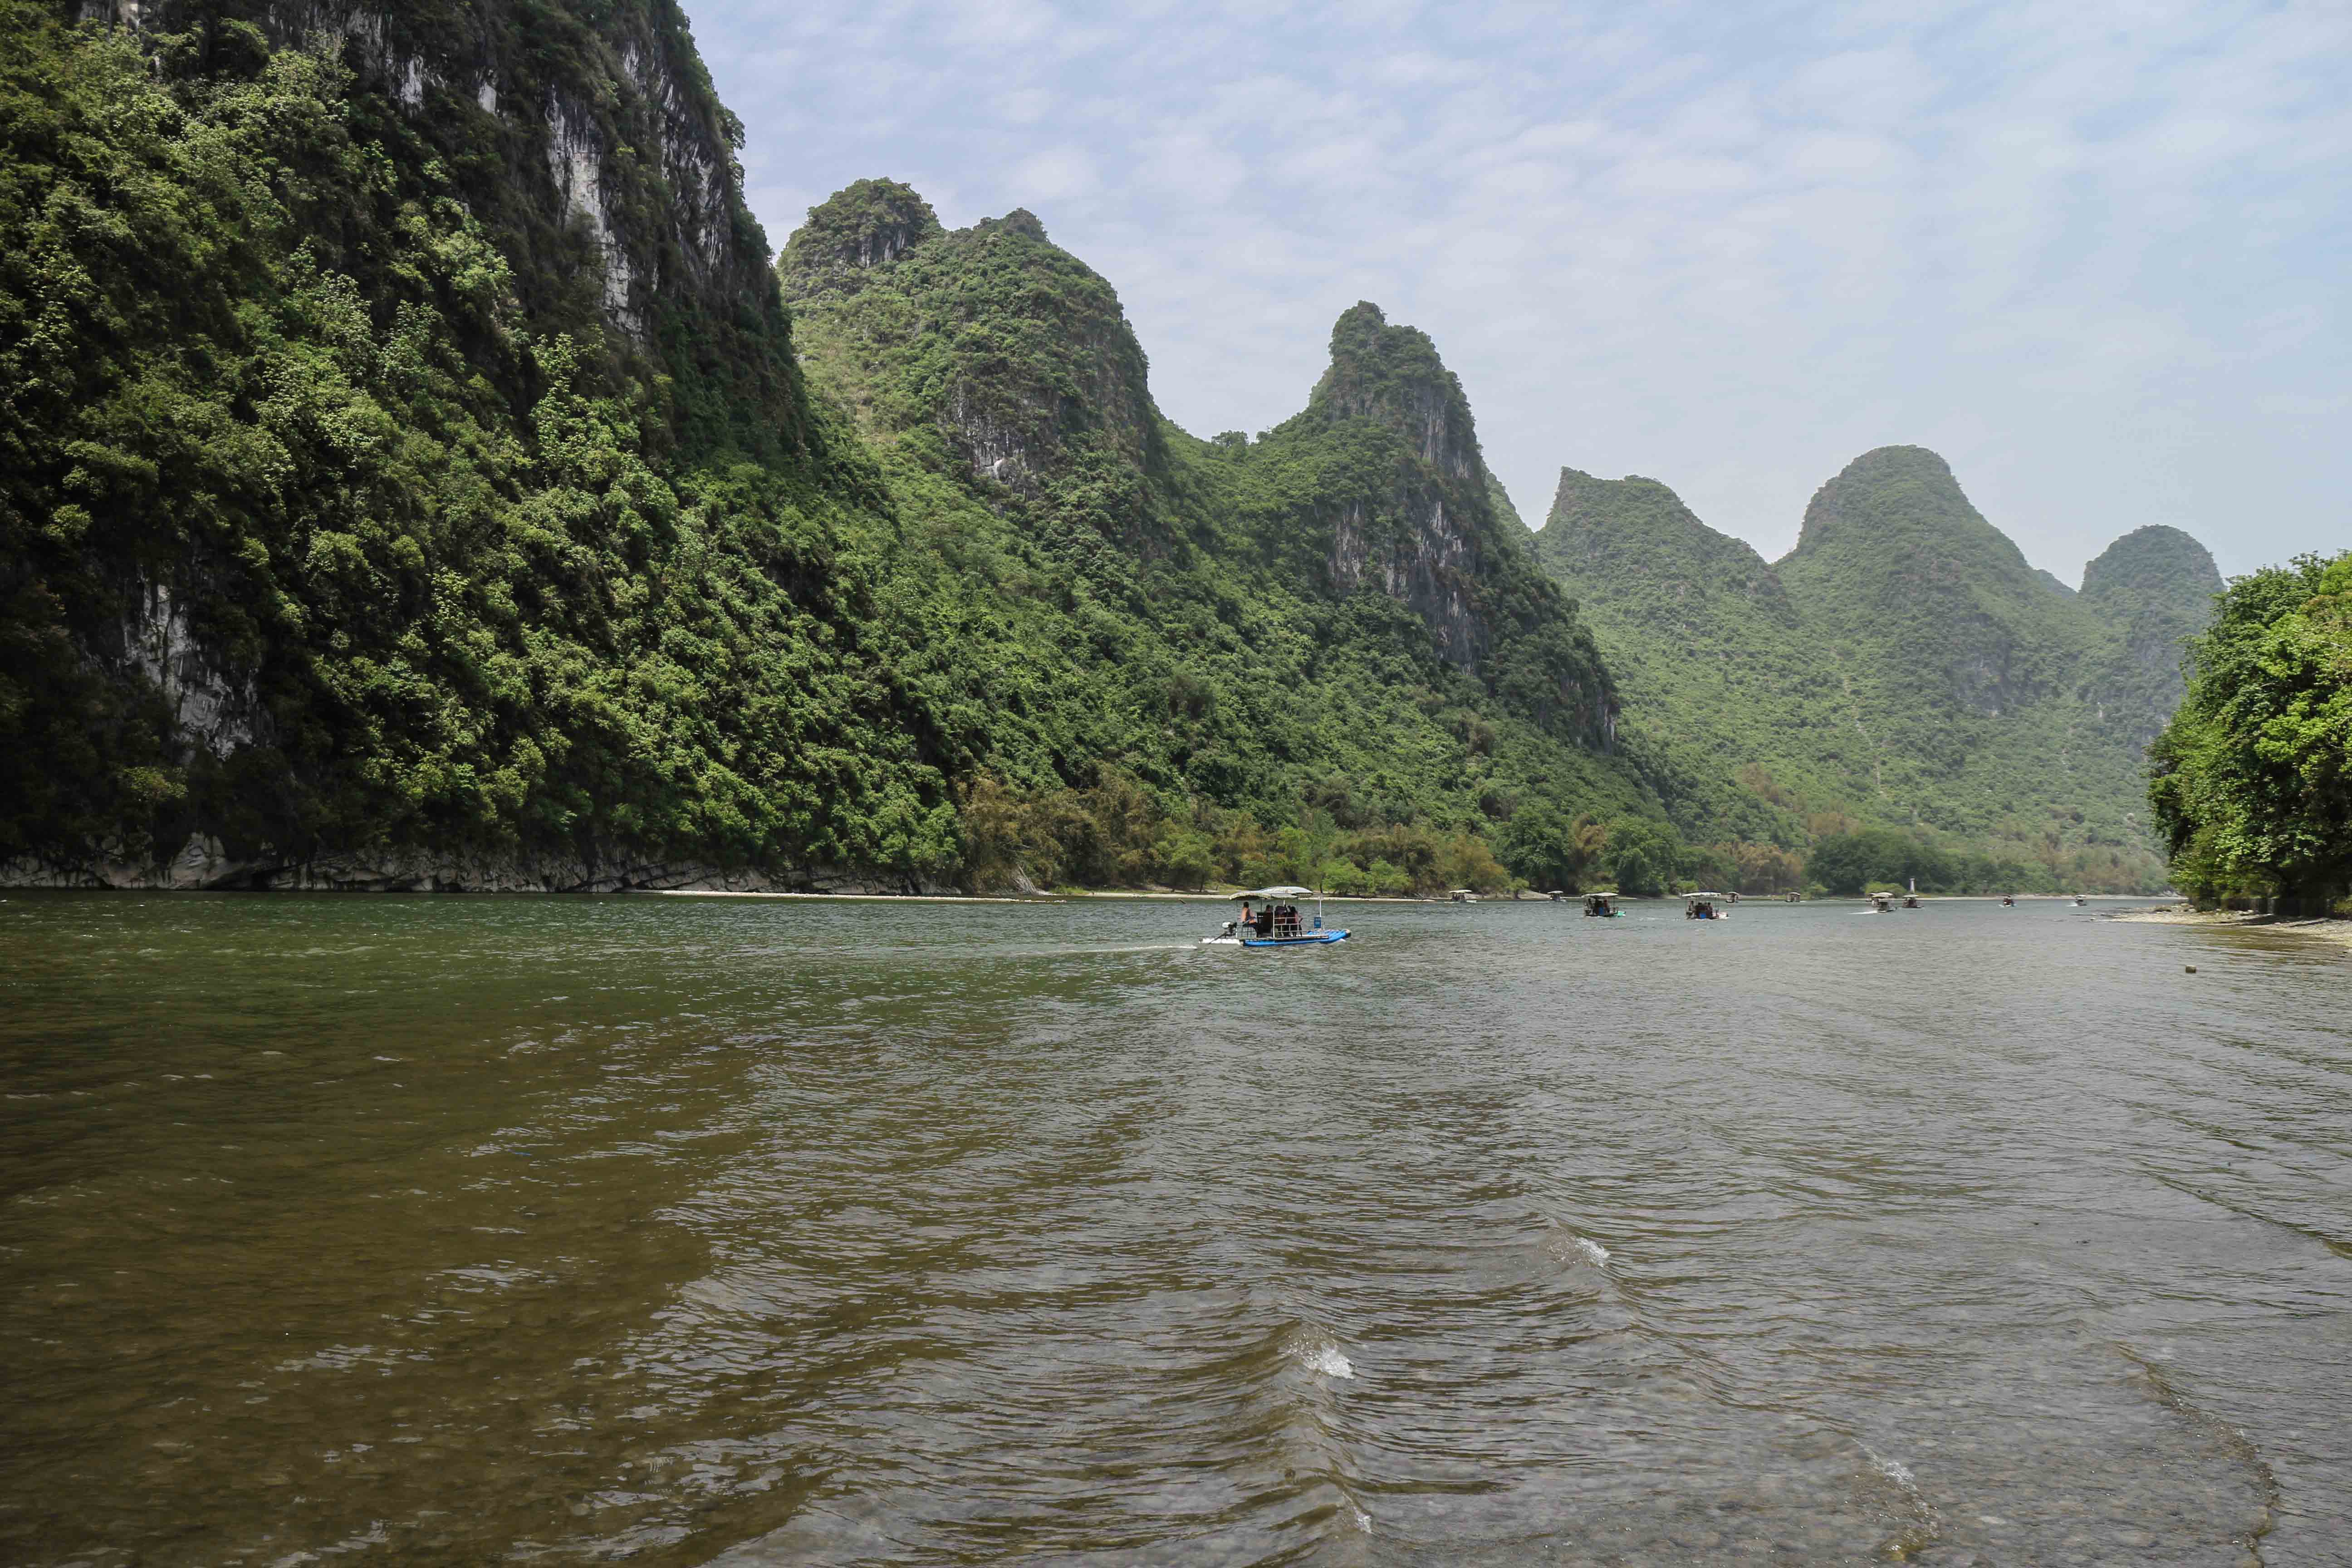 River Li Guilin raft